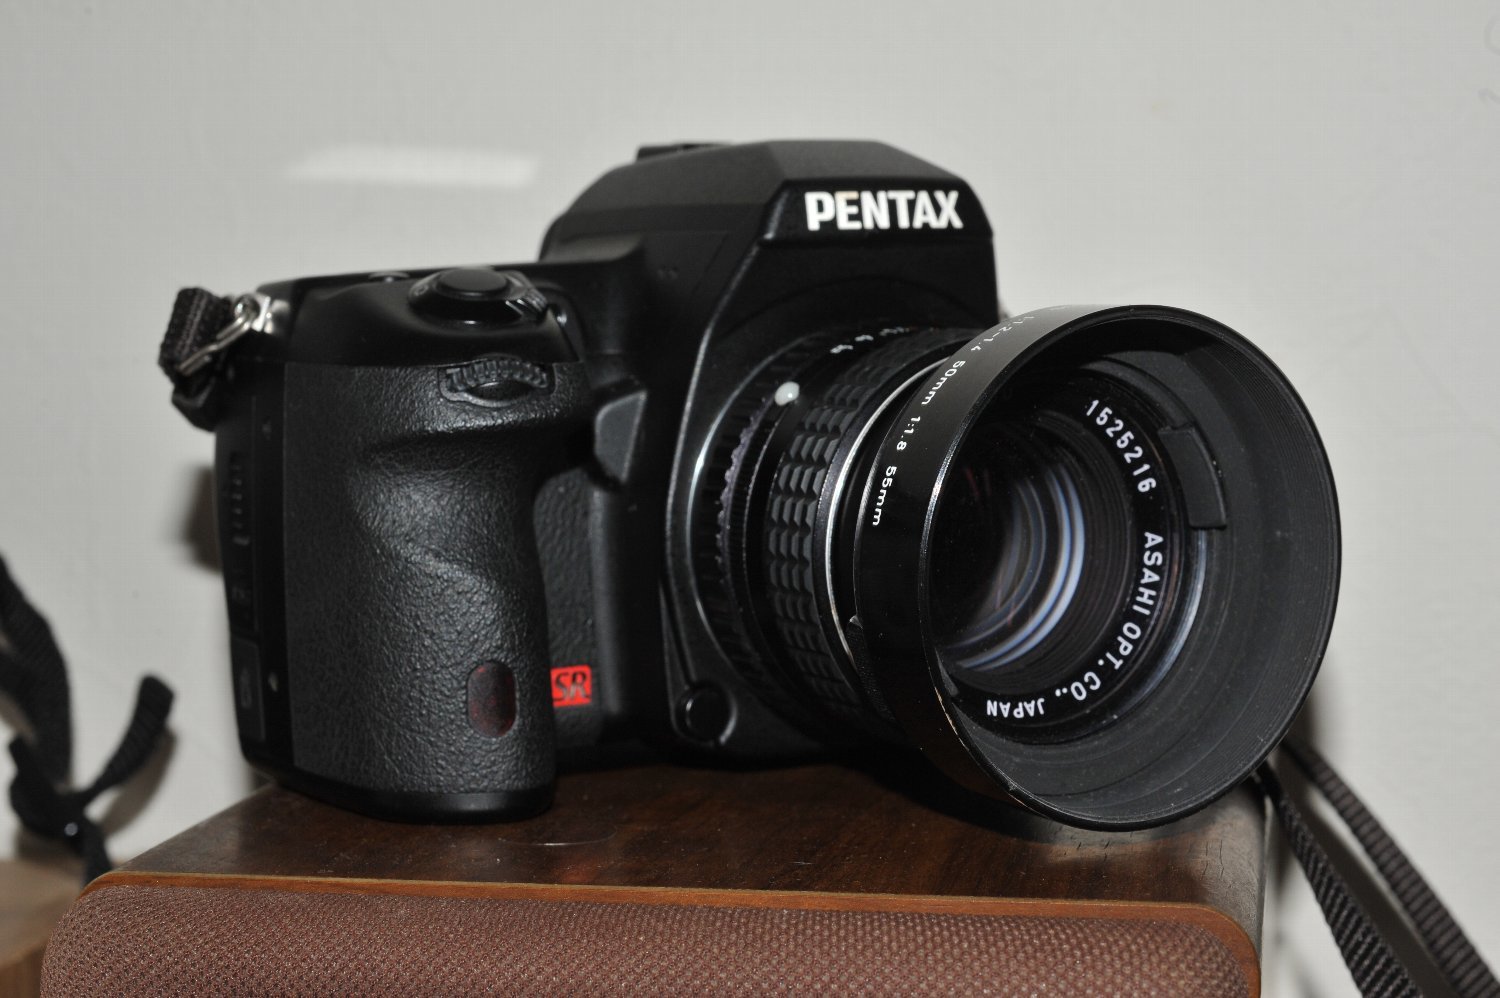 SMC Pentax 50mm F1.4 を K-7 に 付けて : nakajima akira's photobook